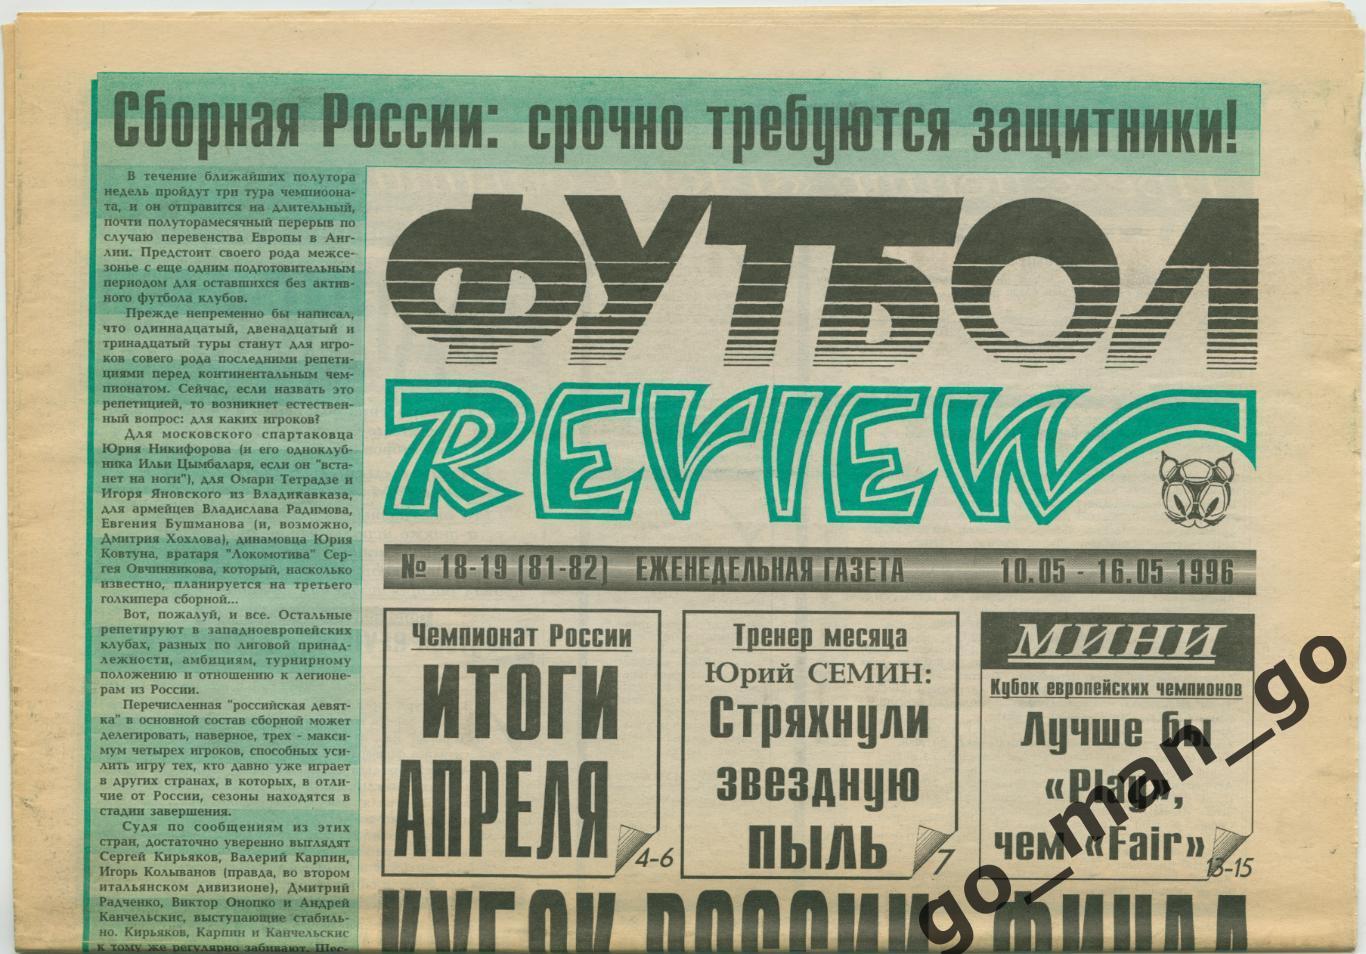 Еженедельник Футбол-Review (Футбол-Ревю), 10-16.05.1996, № 18-19.